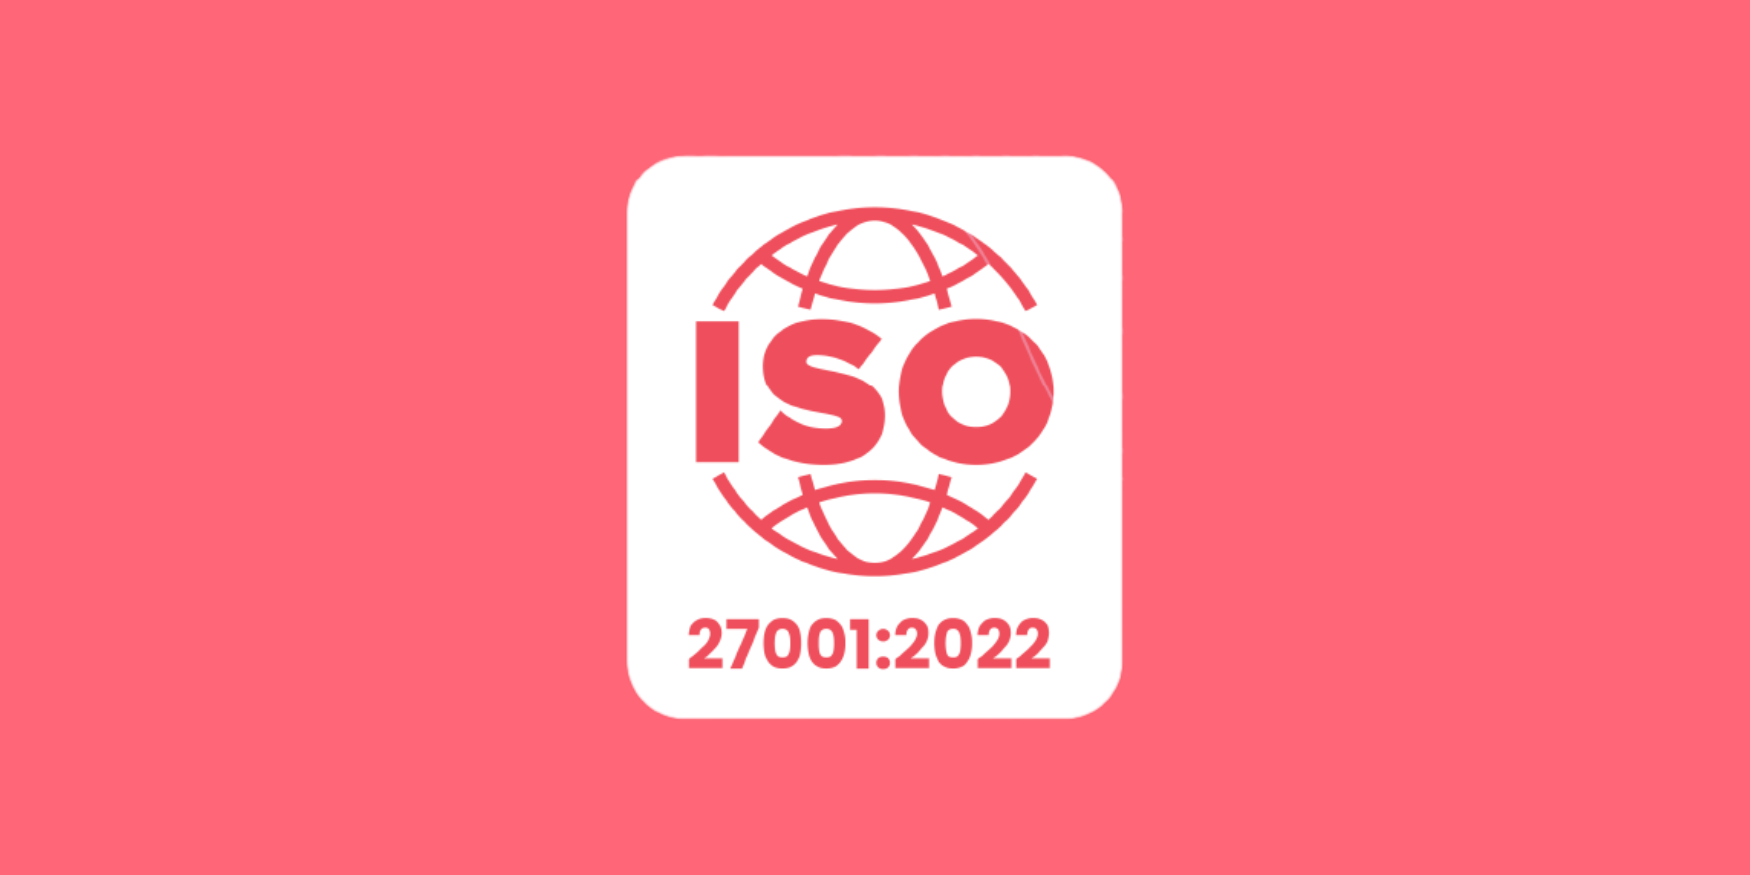 Featured Image: aanmelder.nl behaalt het ISO-certificaat 27001:2022